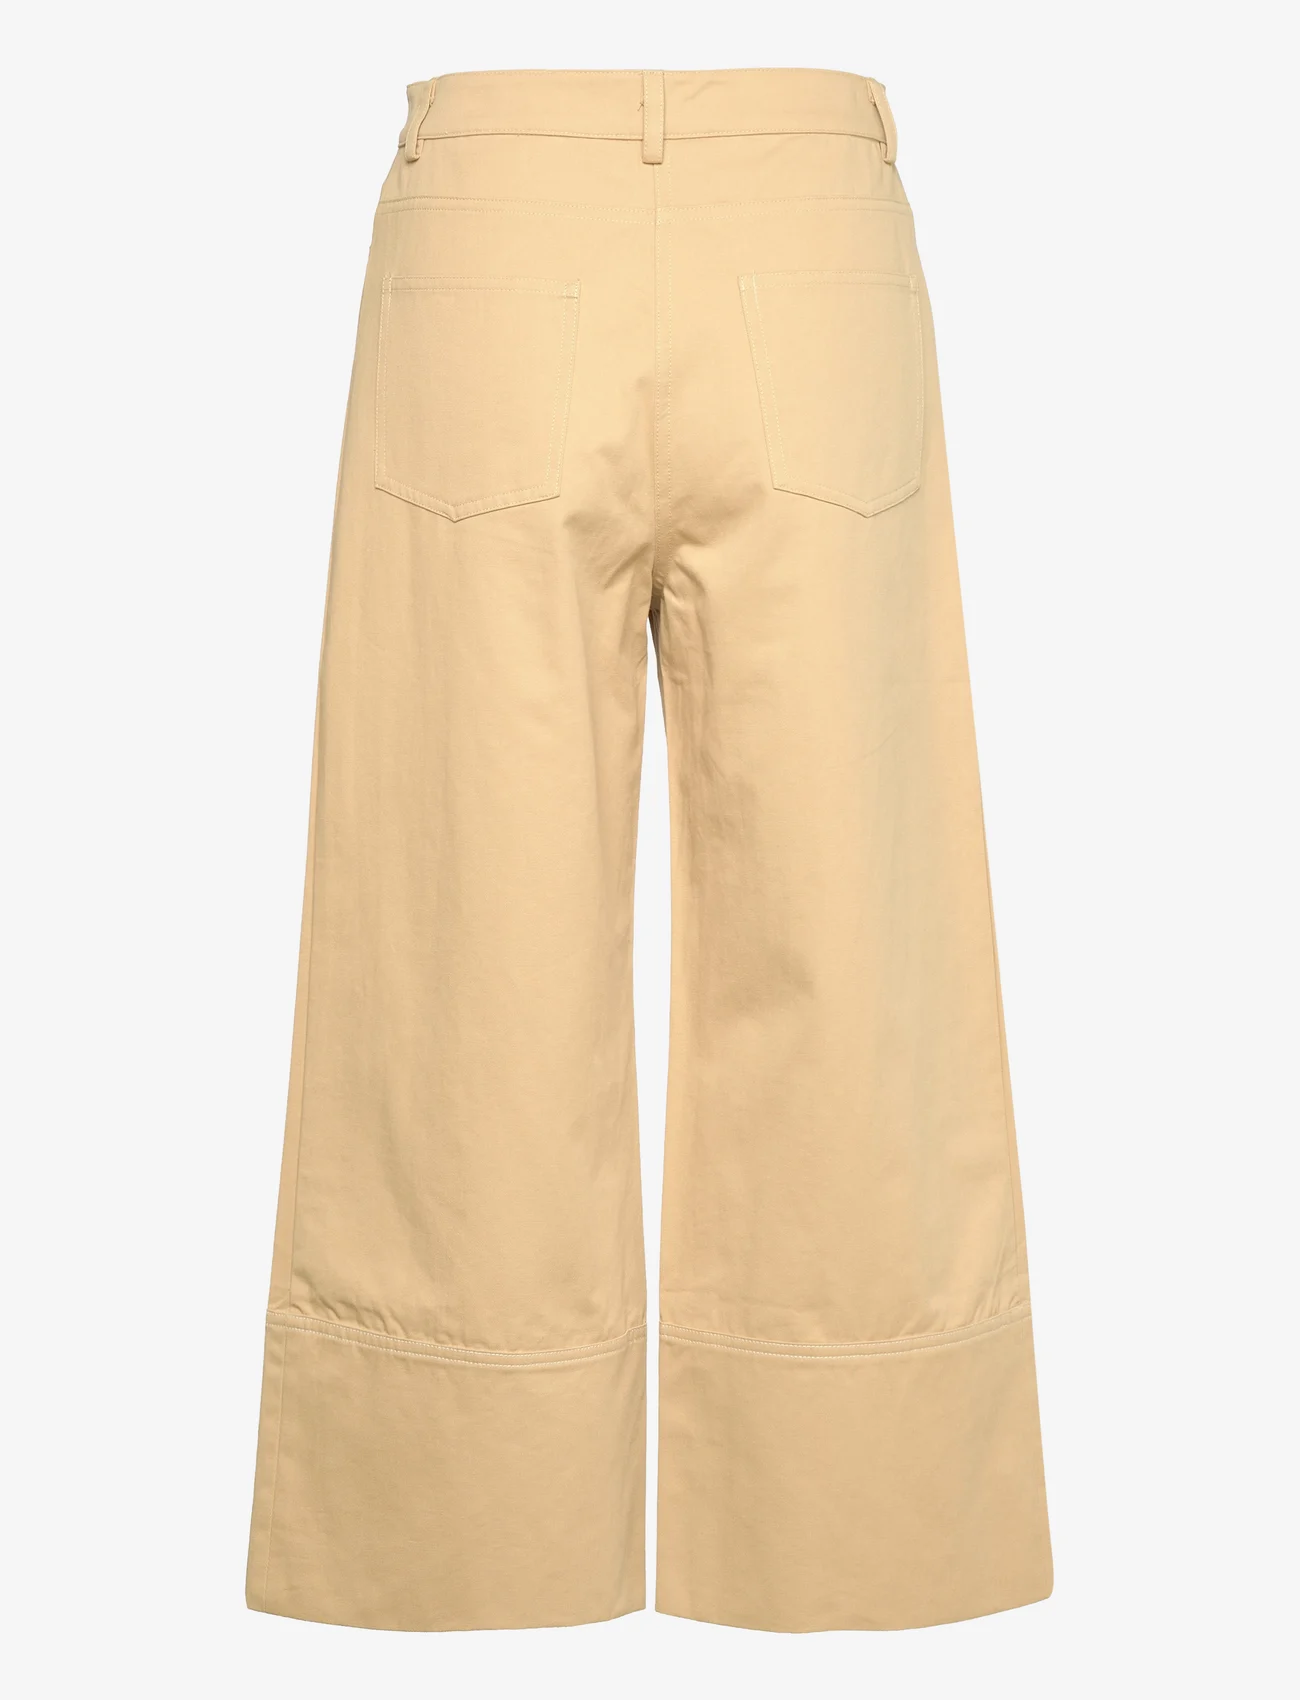 Lovechild 1979 - Nasila Pants - bukser med brede ben - sand - 1